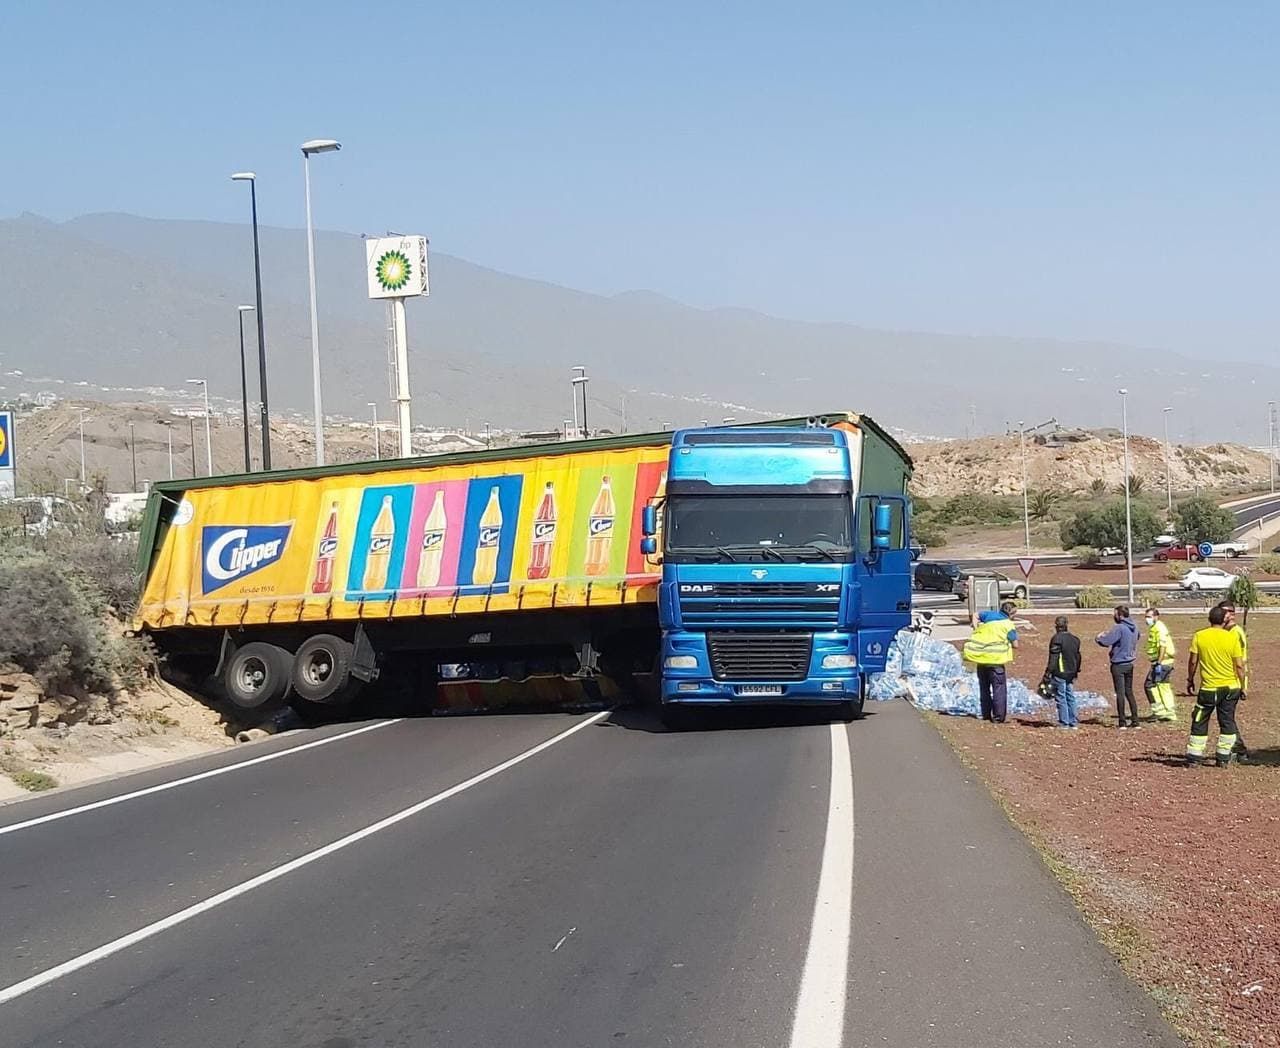 Aparatoso vuelco de un camión con botellas de agua en Tenerife